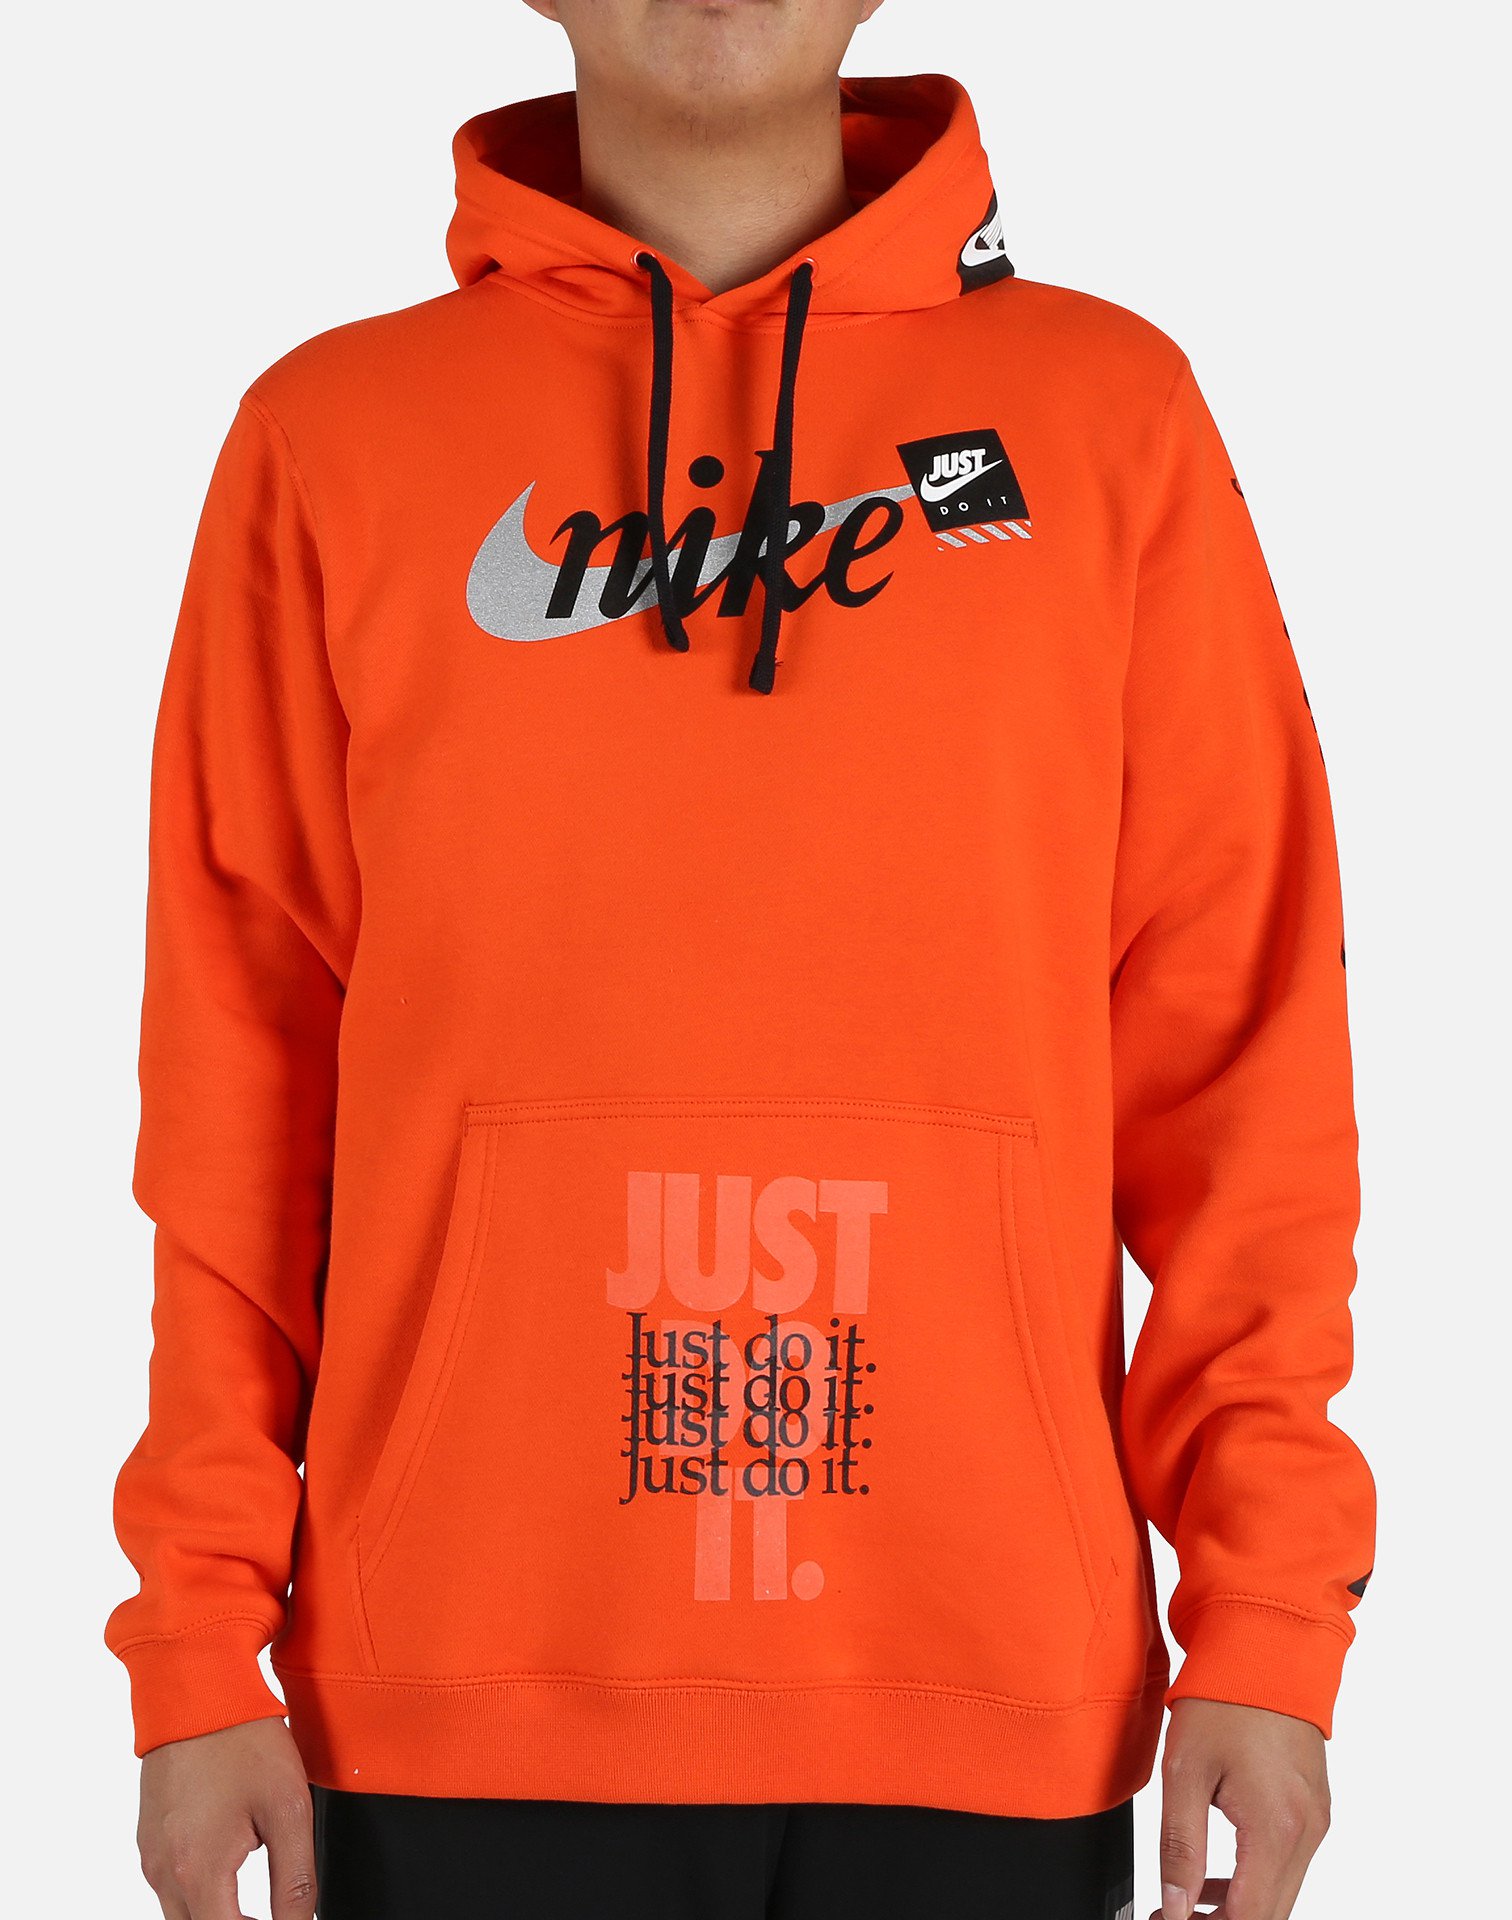 nike hoodie orange and black